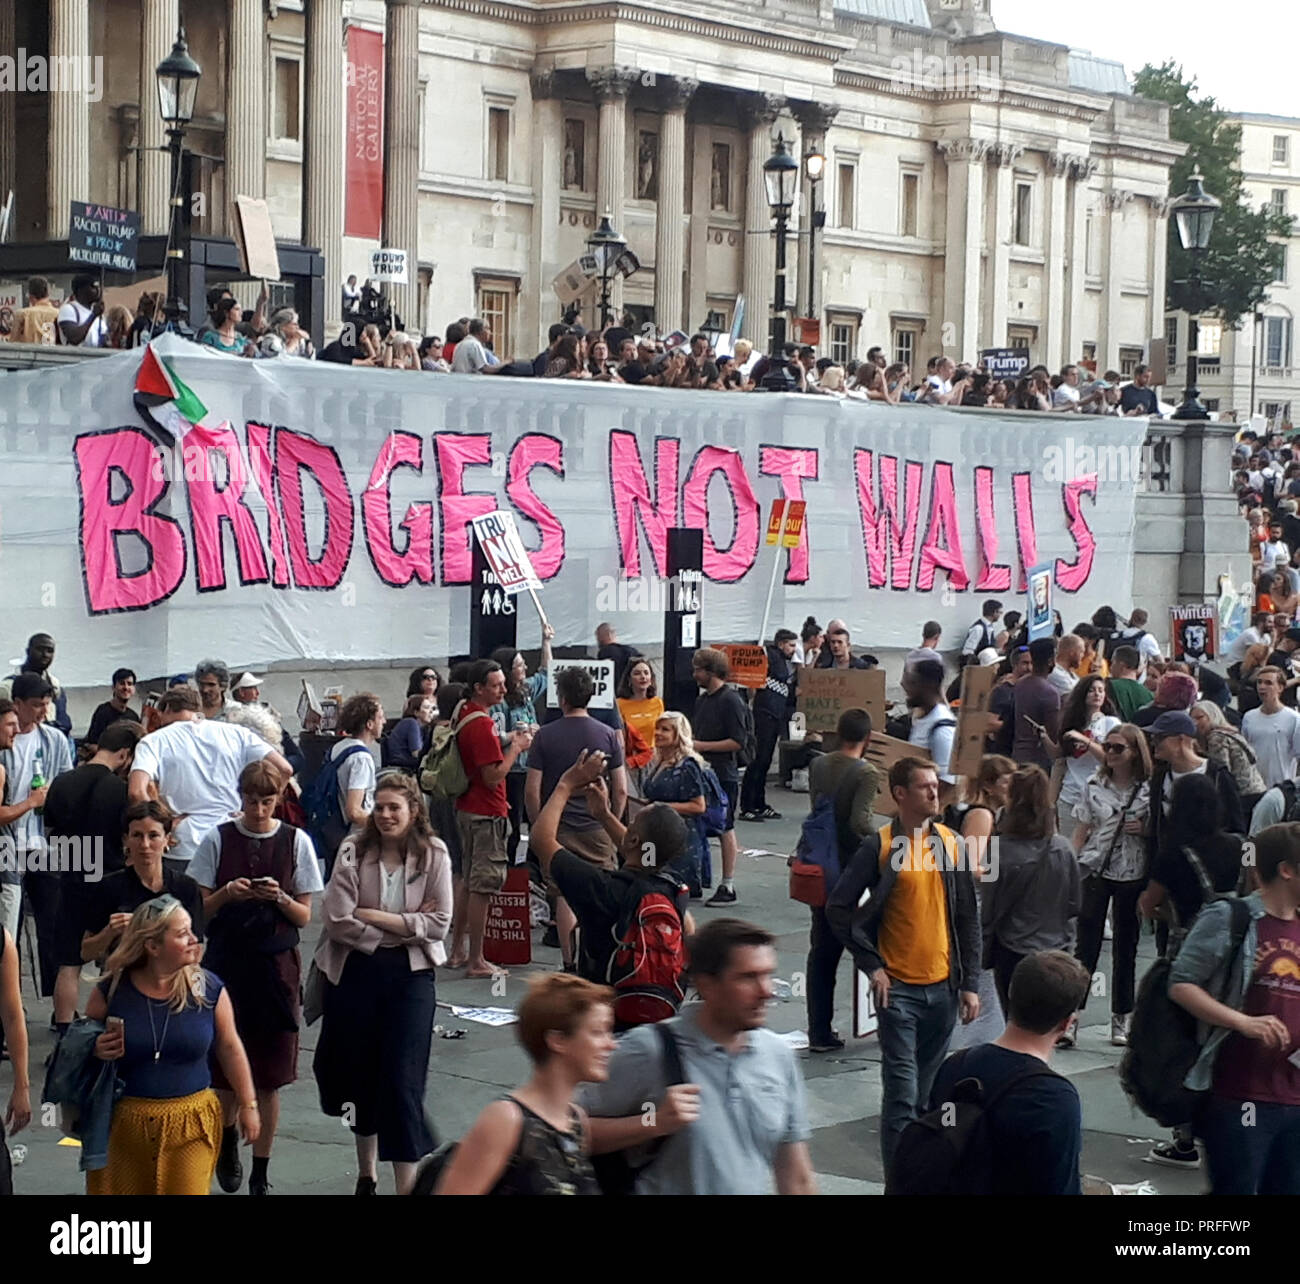 Londres, le 13 juillet 2018. 100 000 personnes protestent contre la visite du président américain Donald Trump. Les manifestants se rassembleront à Trafalgar Square. Un panneau disant 'Construire des ponts pas des murs" peut être vu. (Le mot 'Build' est hors du champ). Banque D'Images